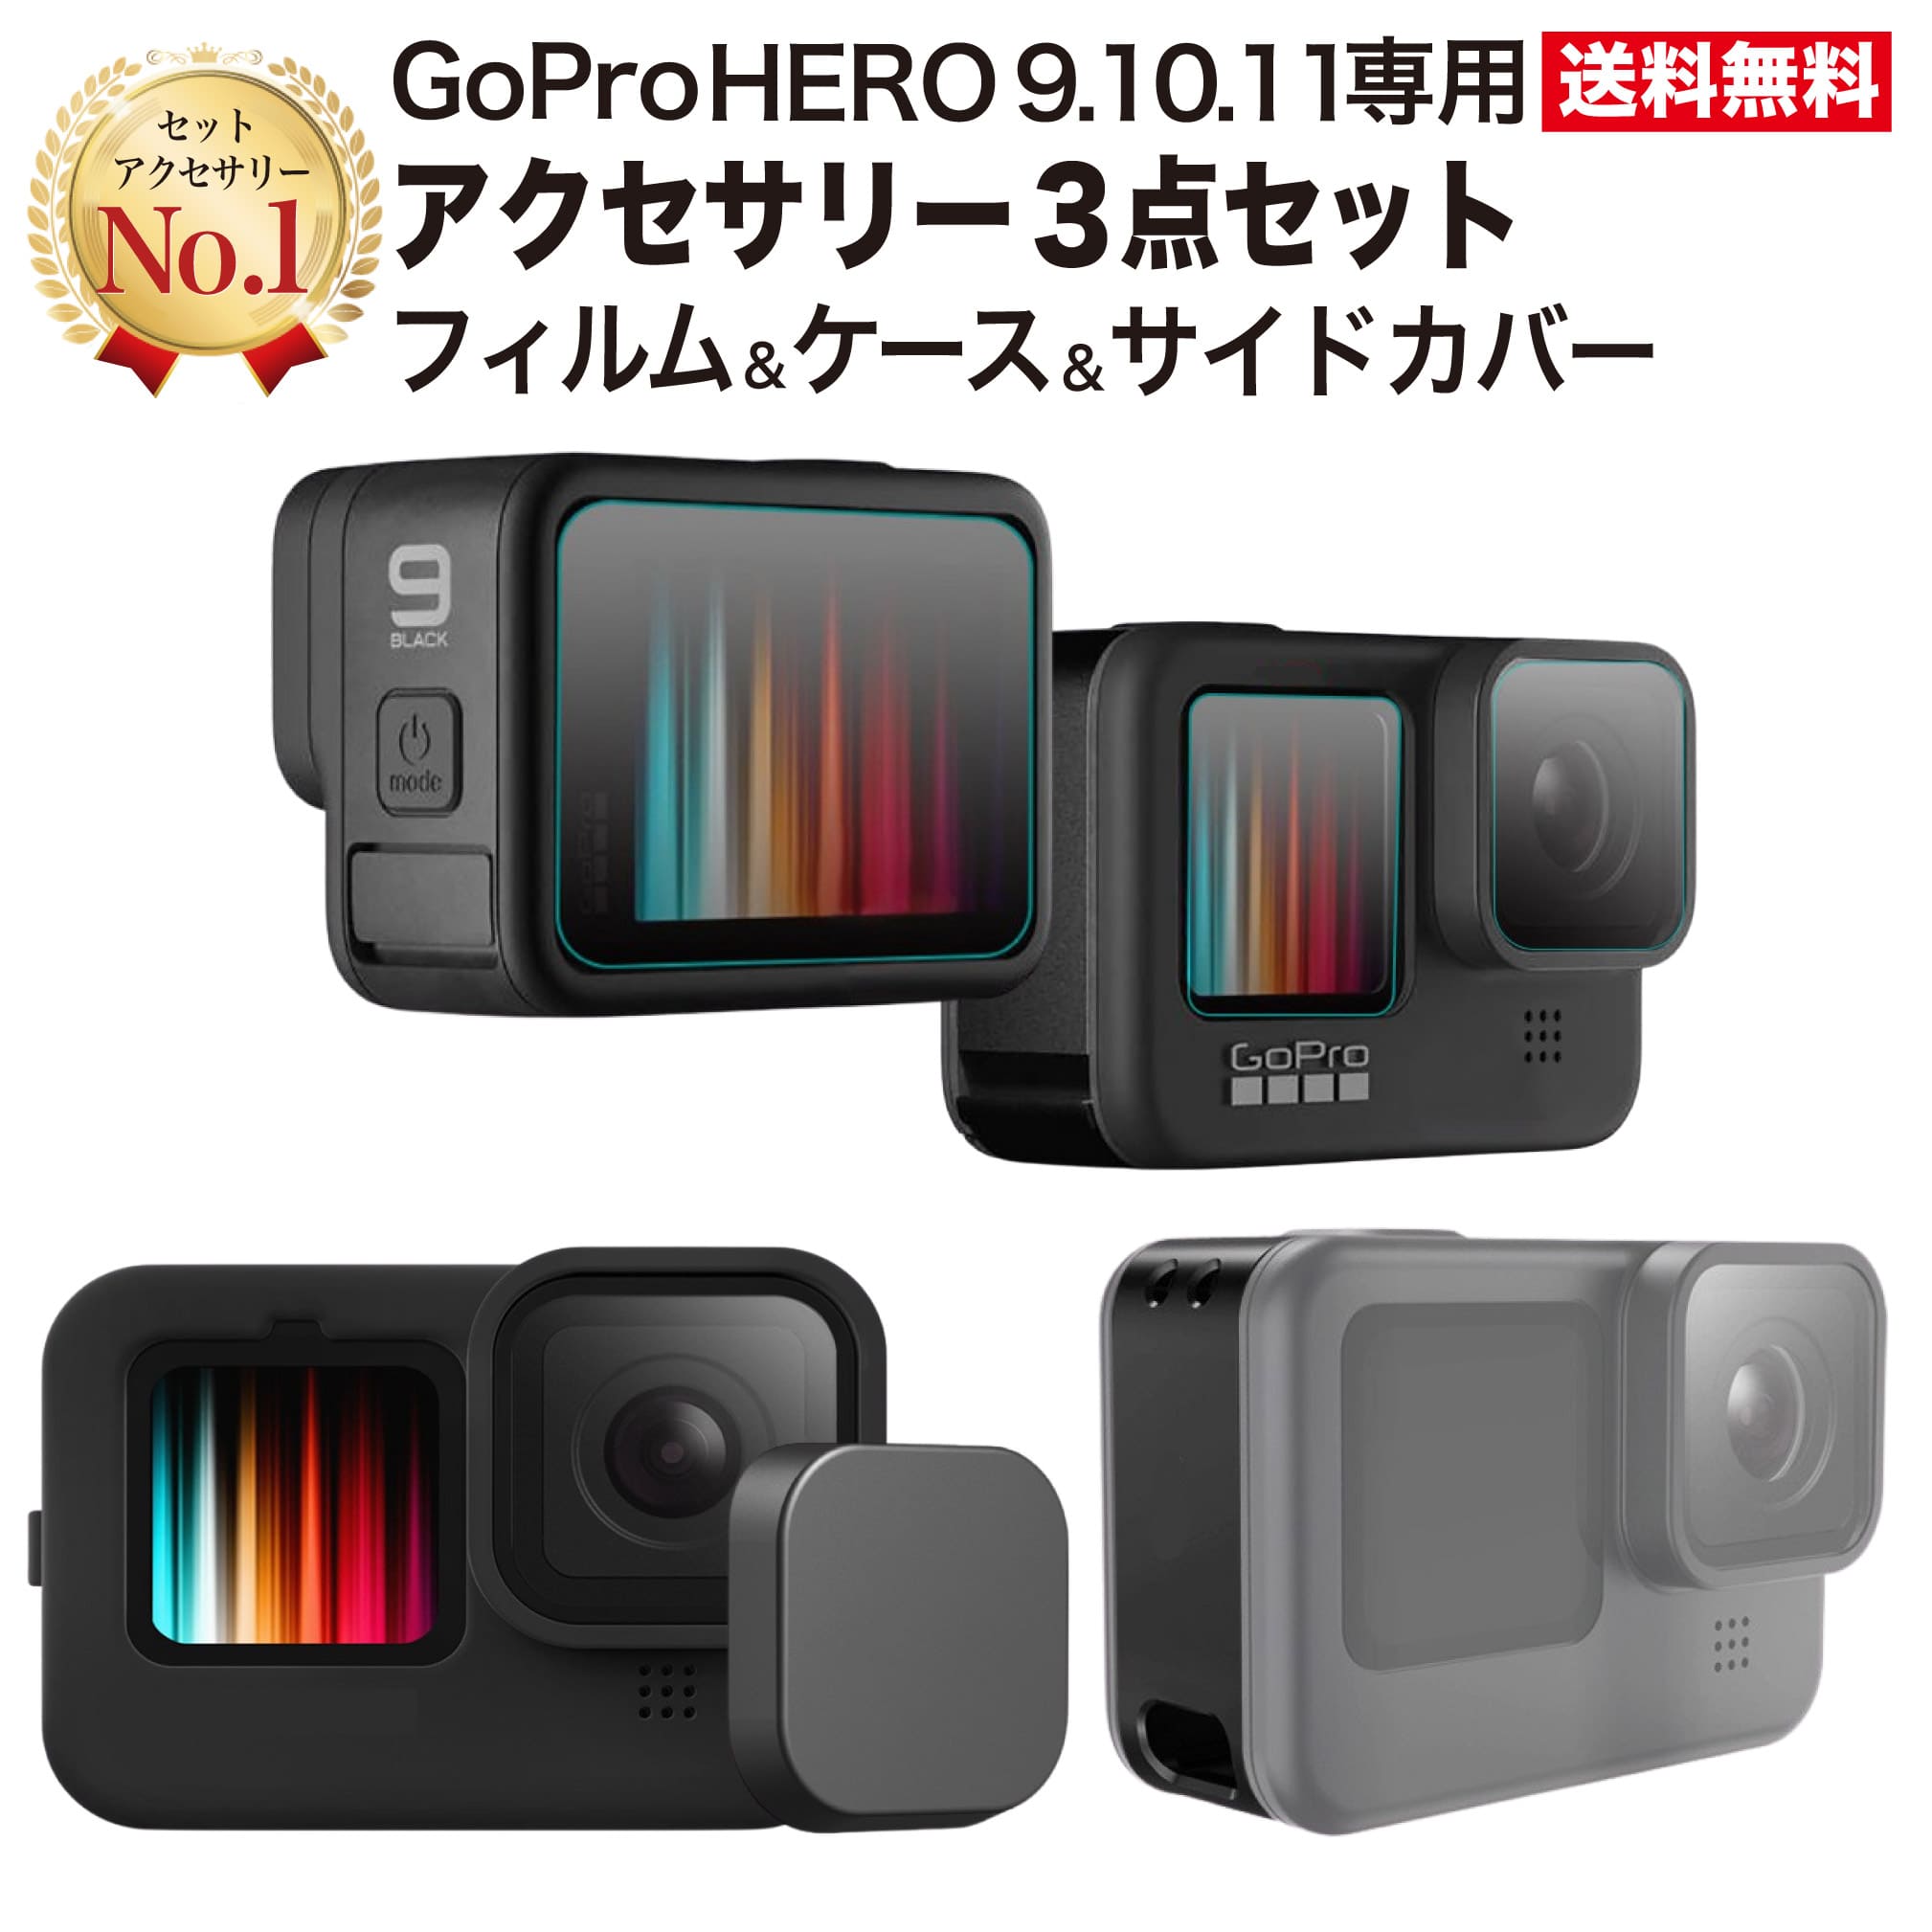 GoPro HERO9 Black 防水ウェアラブルカメラ アクセサリーセット 【期間限定お試し価格】 家電・スマホ・カメラ 